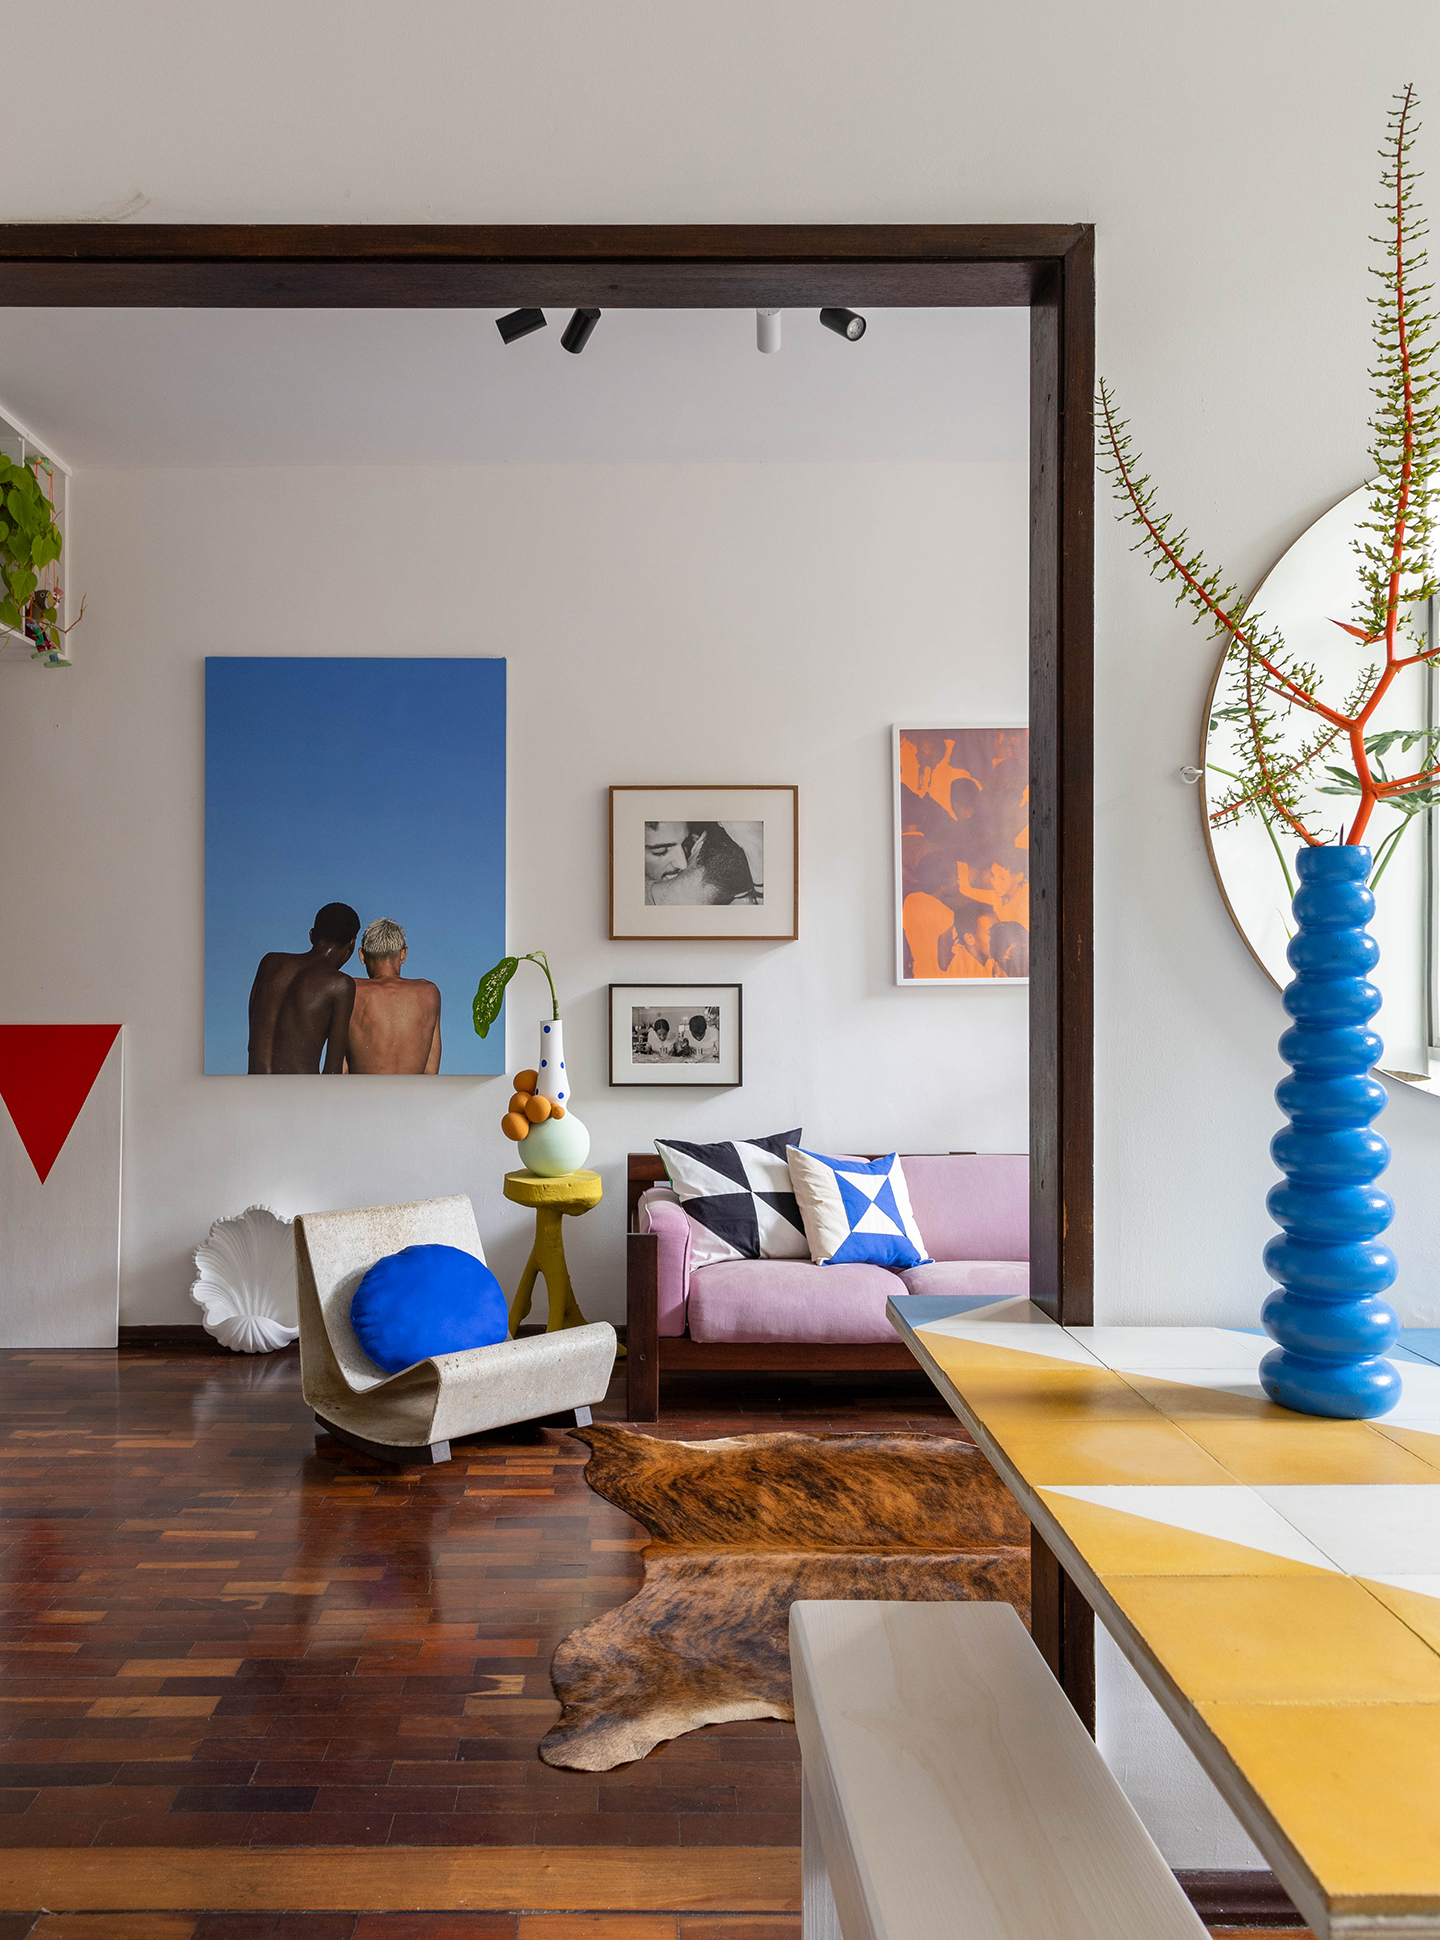 Apartamento com decoração autêntica, arte e detalhes coloridos. Rafael Gomes.